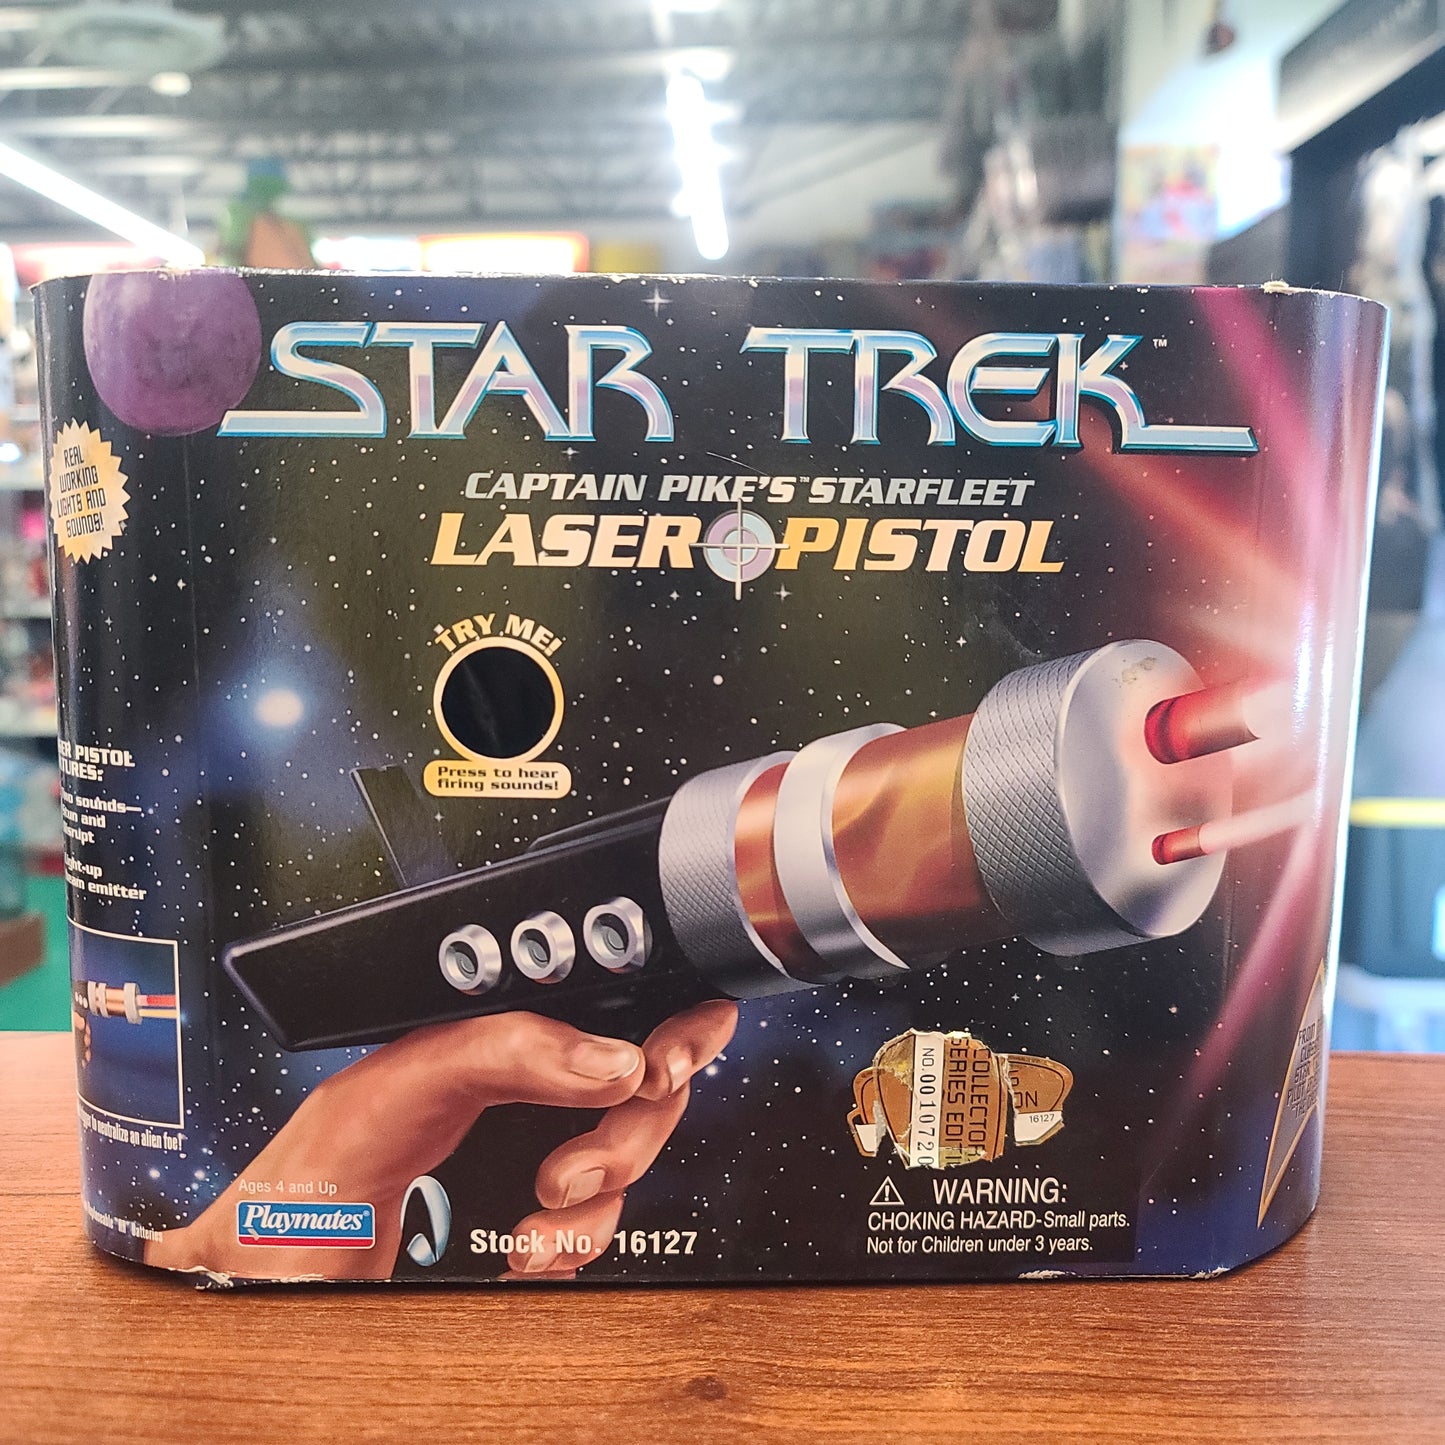 Star Trek Laser Pistol